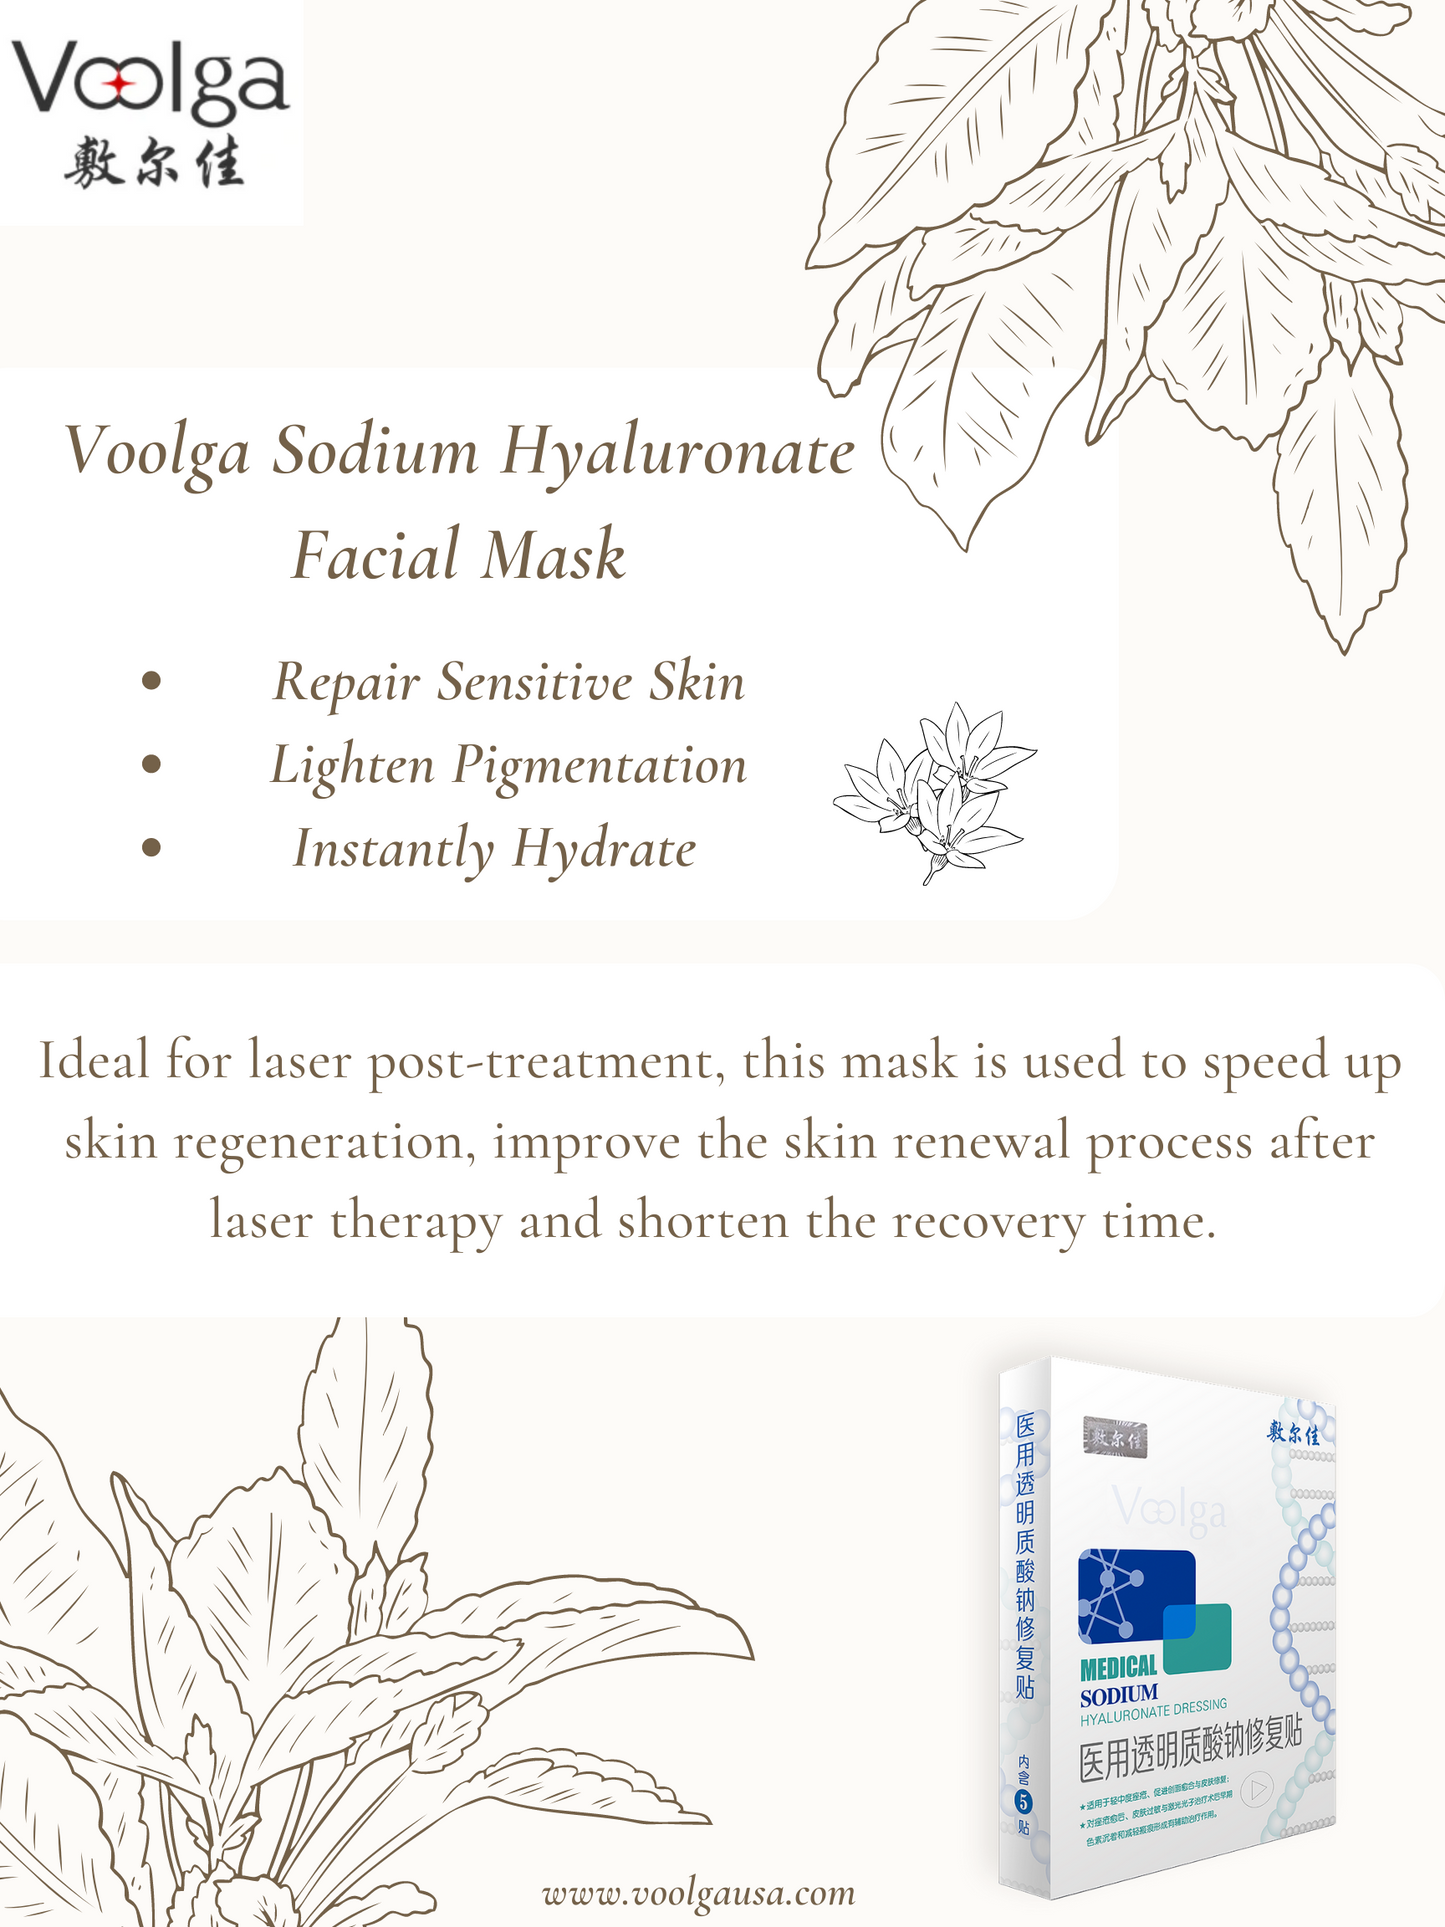 Voolga Medical Sodium Hyaluronate Dressing Repair Facial Mask(The White Mask)